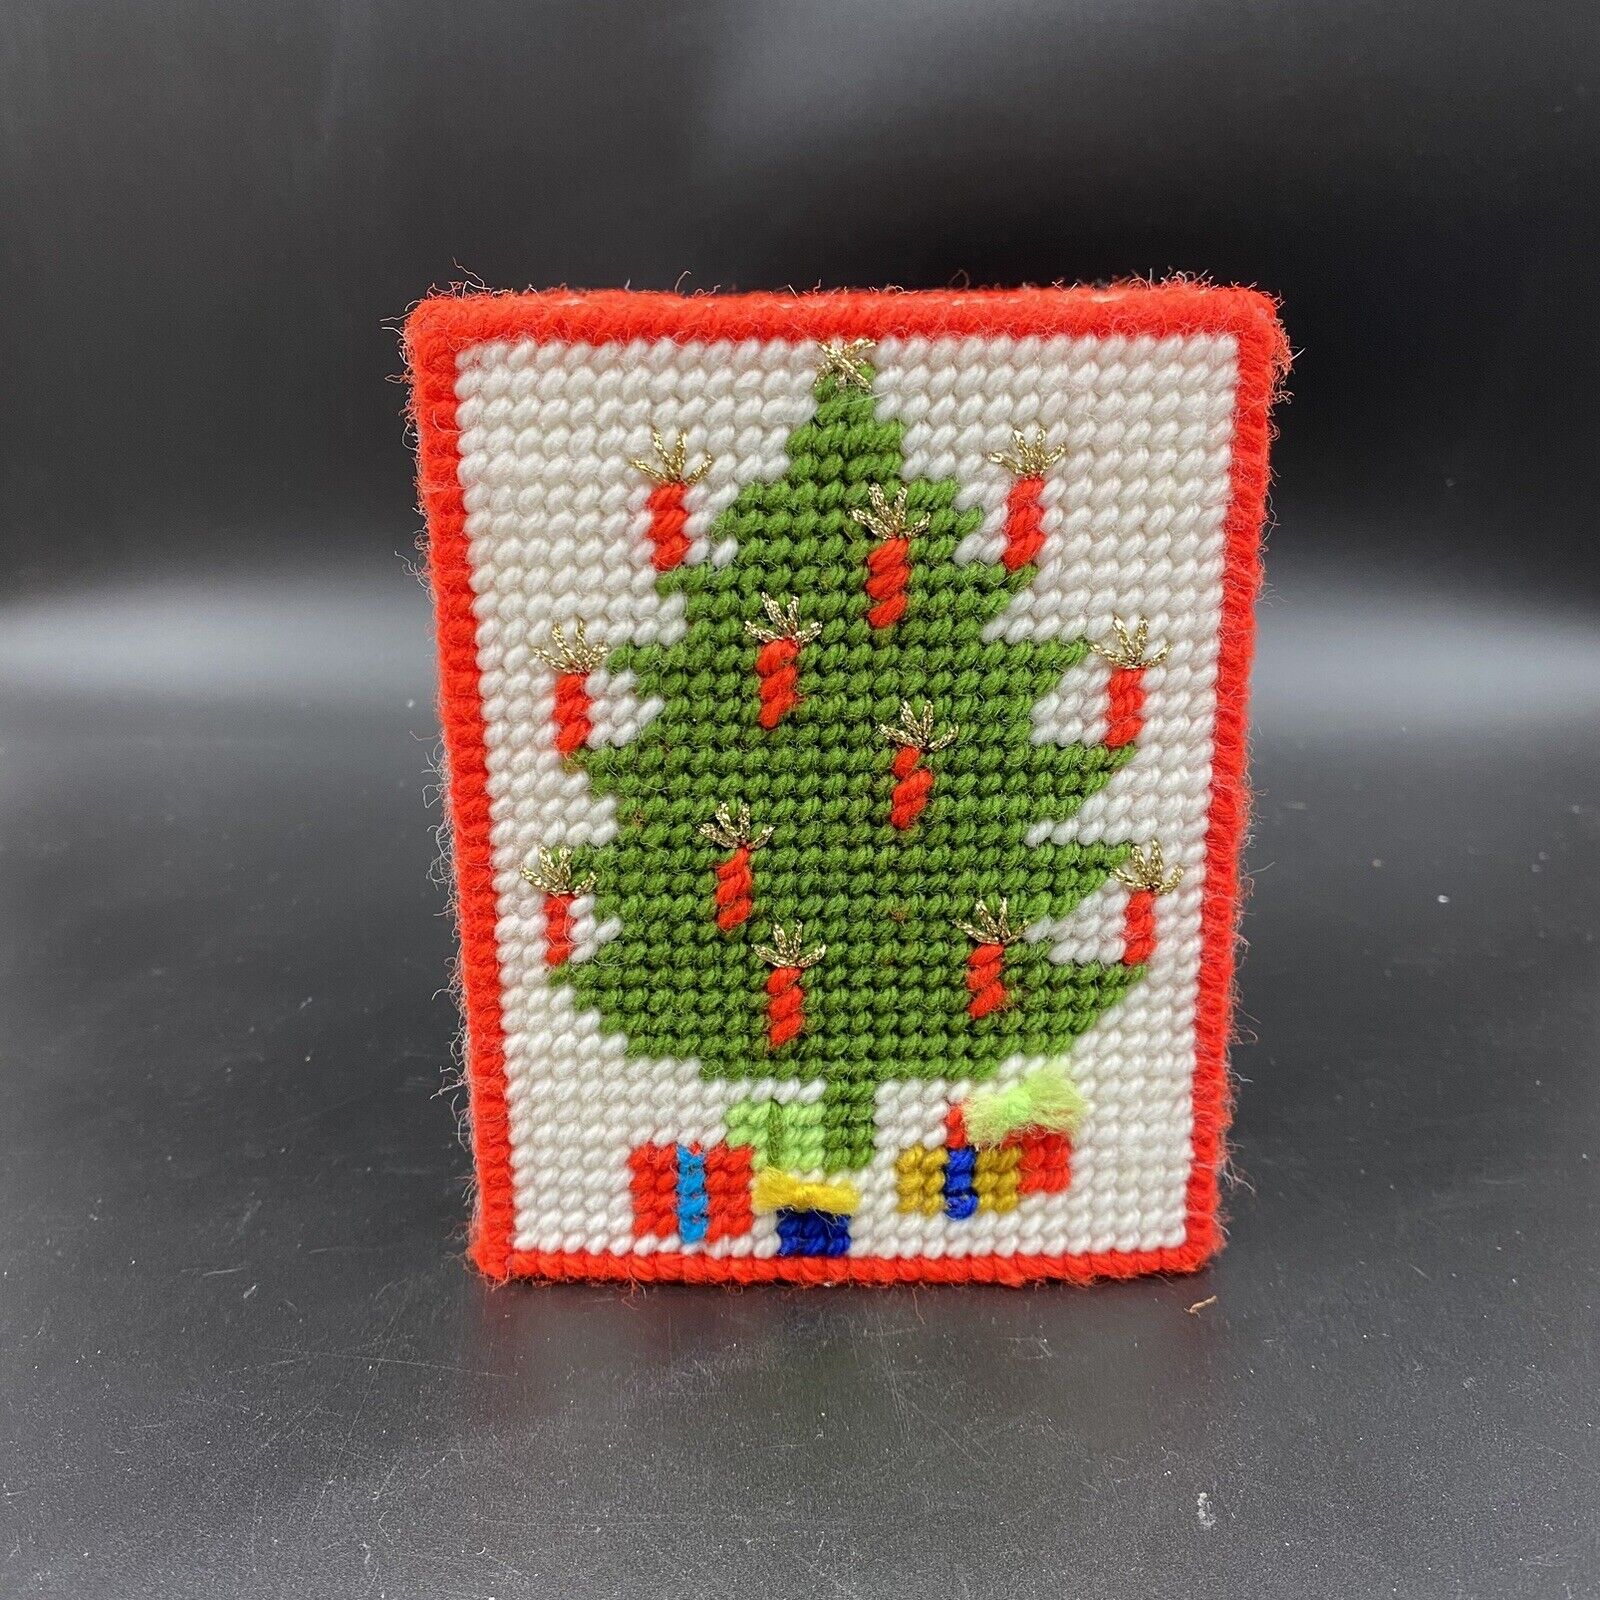 Vintage Handmade Knitted Crochet Christmas Tree Tissue Box Cover Holder